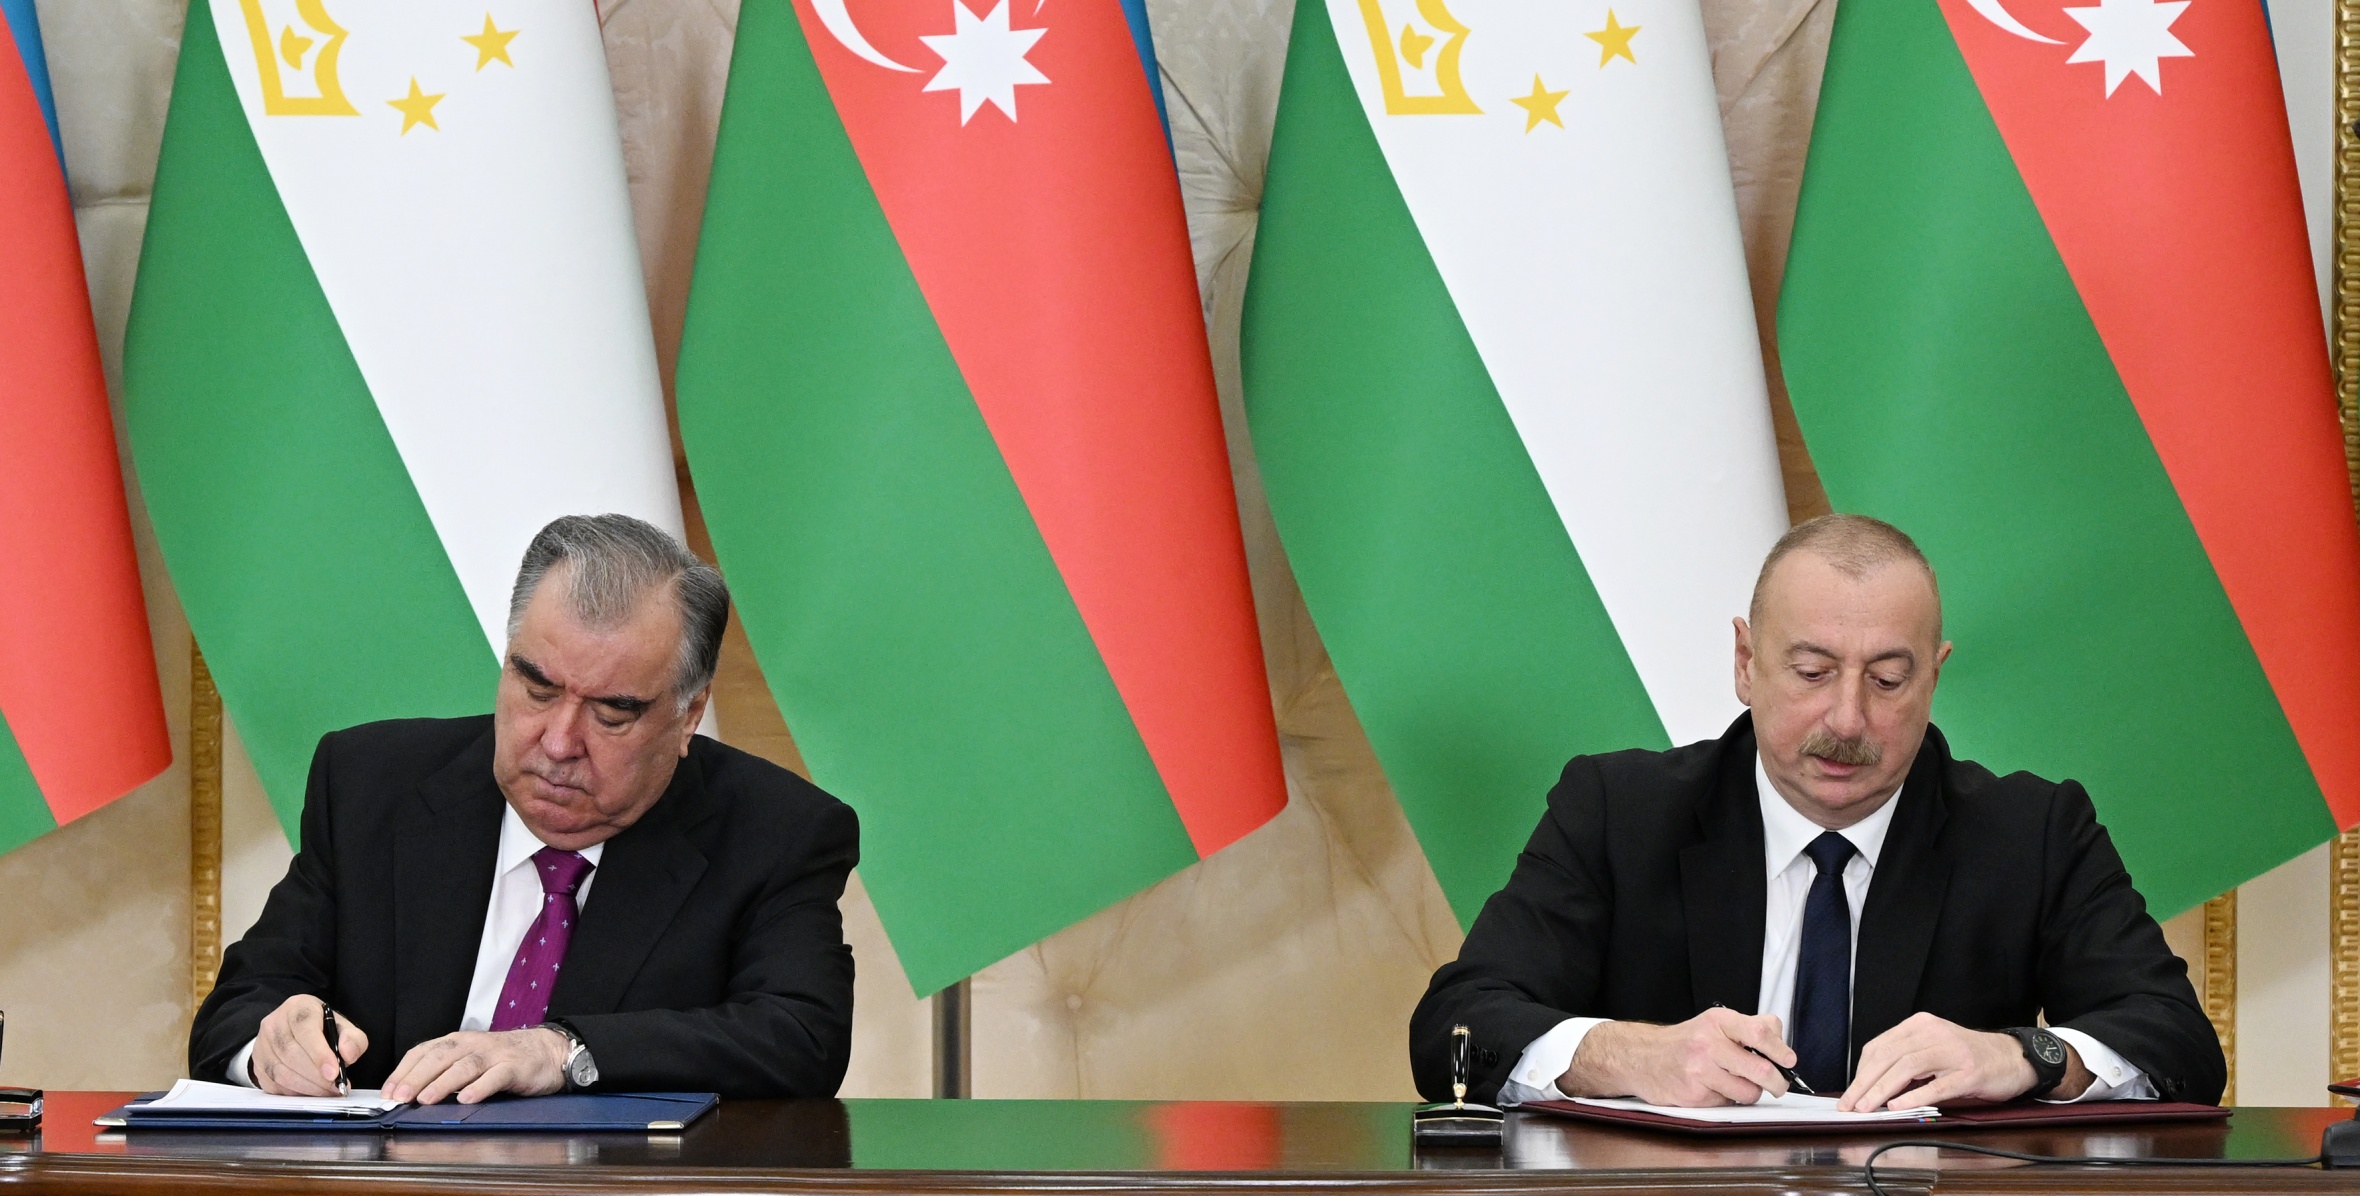 Azərbaycan-Tacikistan sənədləri imzalandı - FOTO/VİDEO